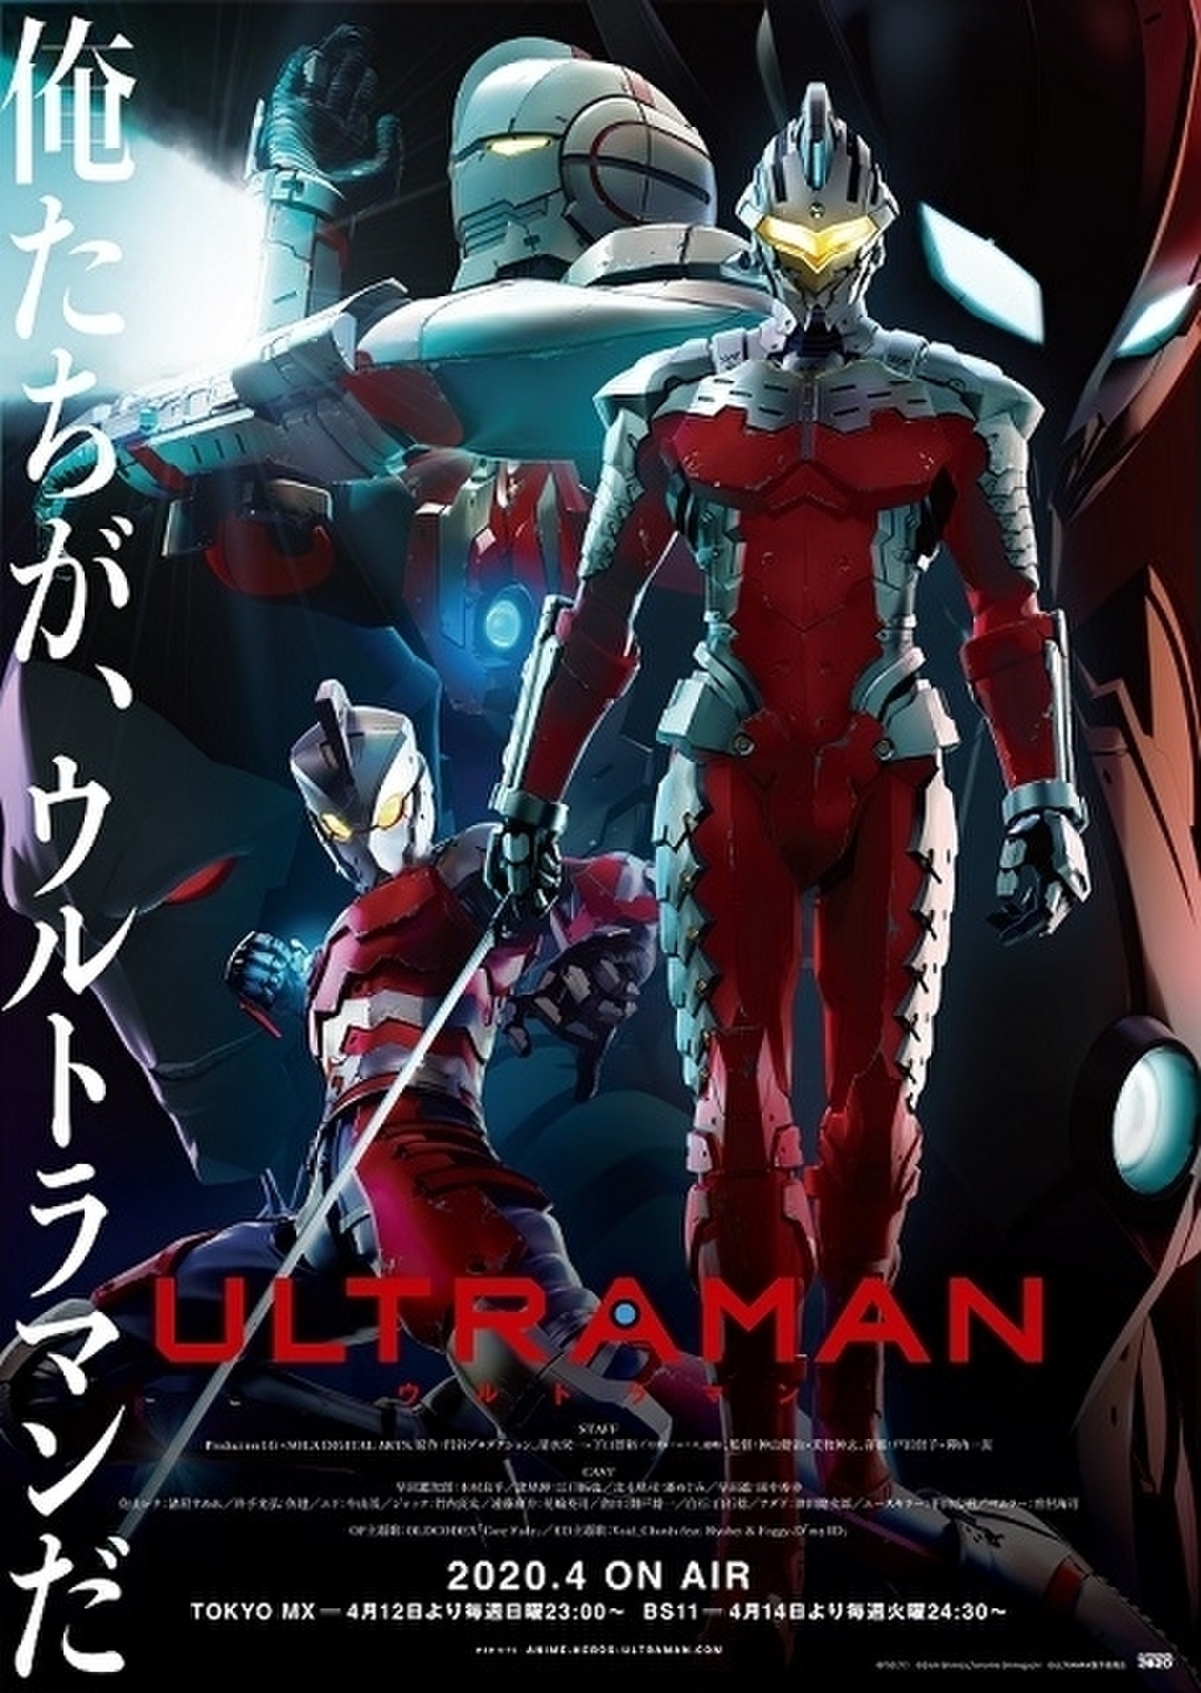 Ultraman 地上波放送に向け 強敵エースキラーと対峙する進次郎と弾たちを描く新pv公開 映画ニュース 映画 Com